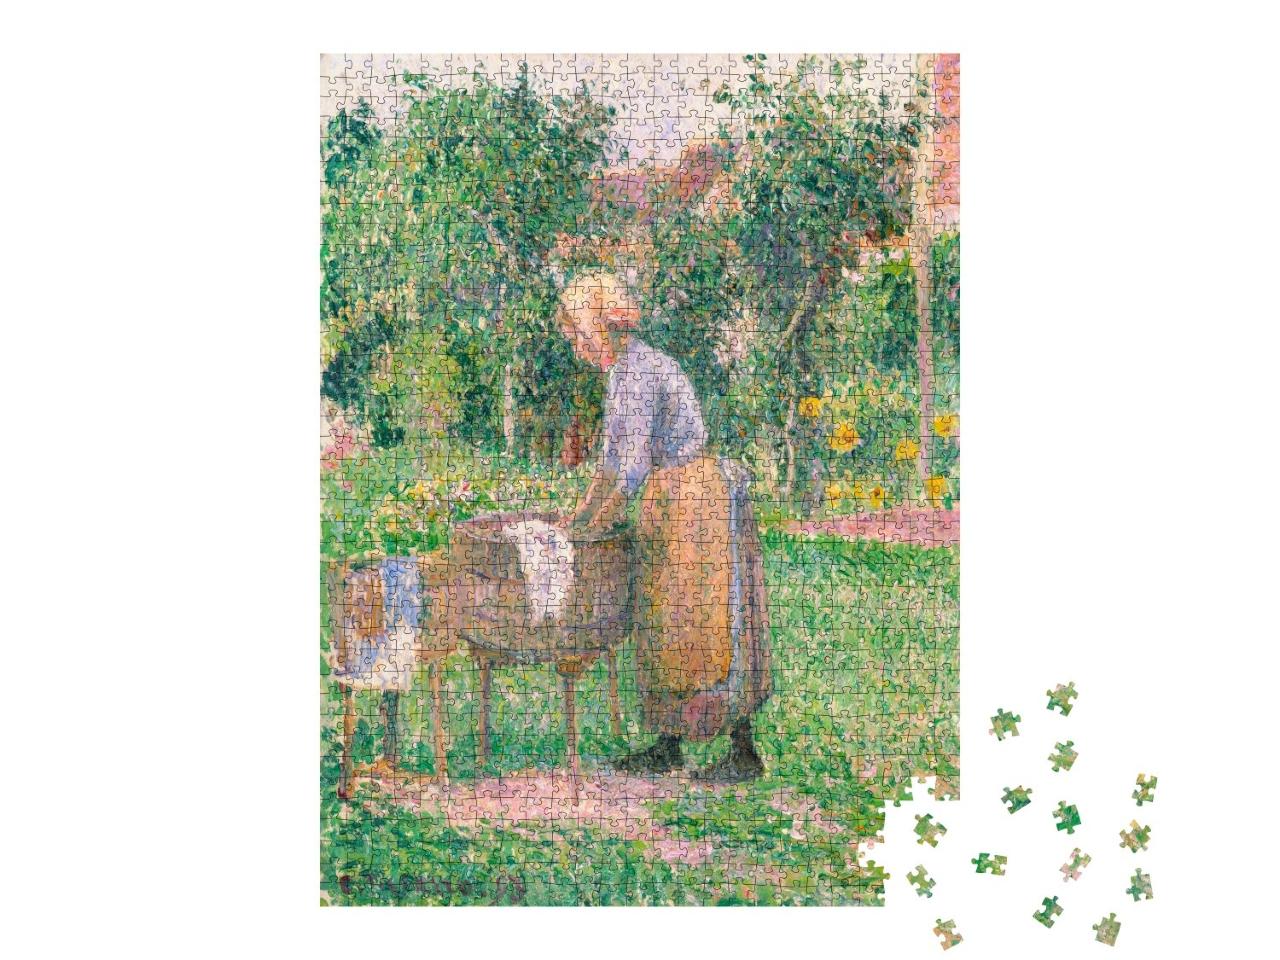 Puzzle de 1000 pièces « Camille Pissarro - Une blanchisseuse à Éragny »